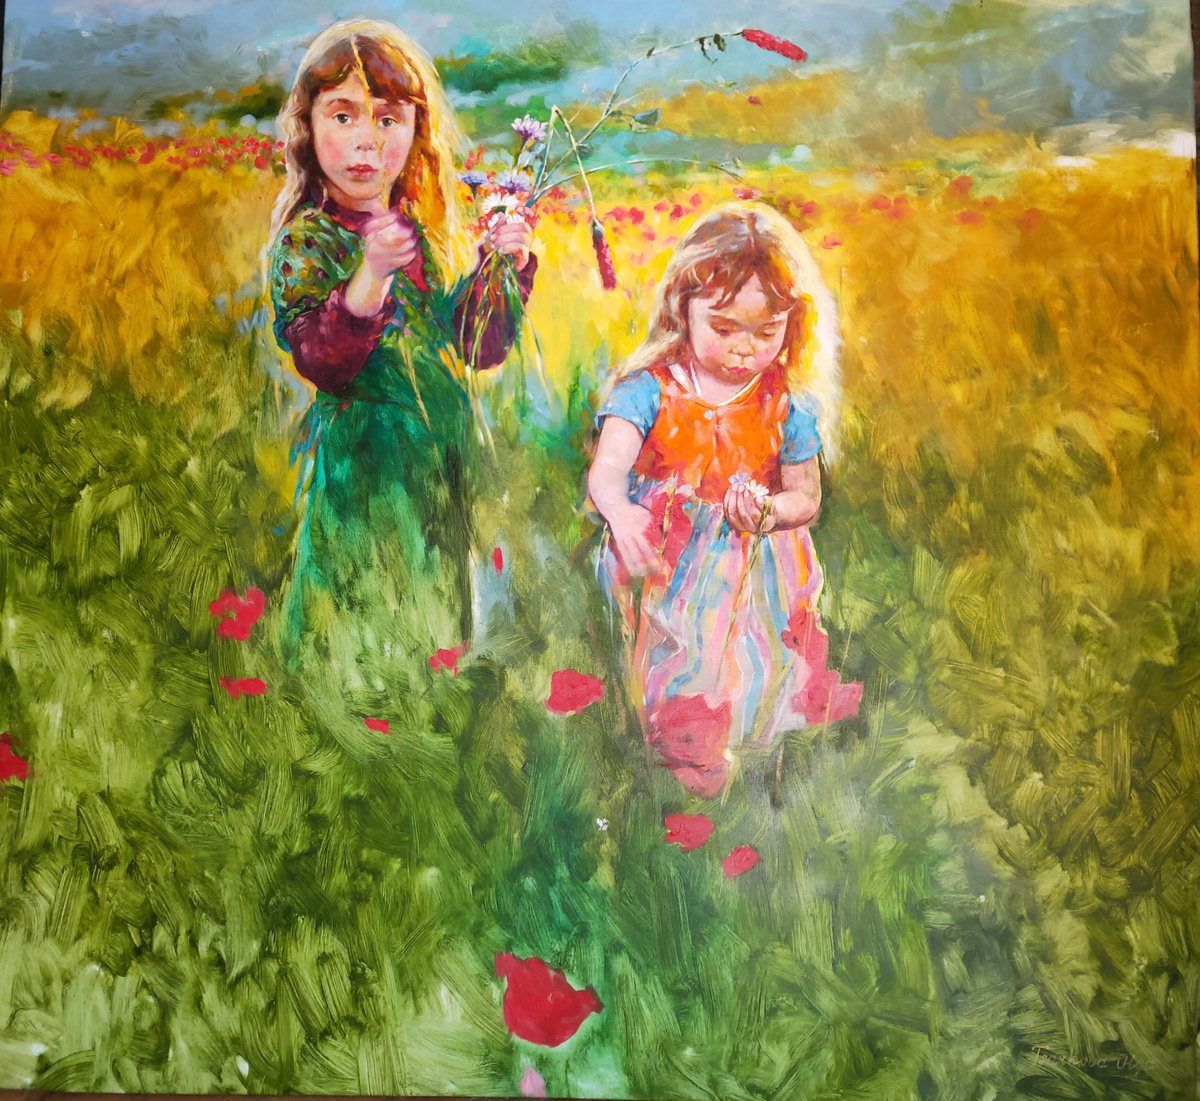 Two Sisters Painting Poppy Field Original Art by Olga Tsarkova by Olga Tsarkova